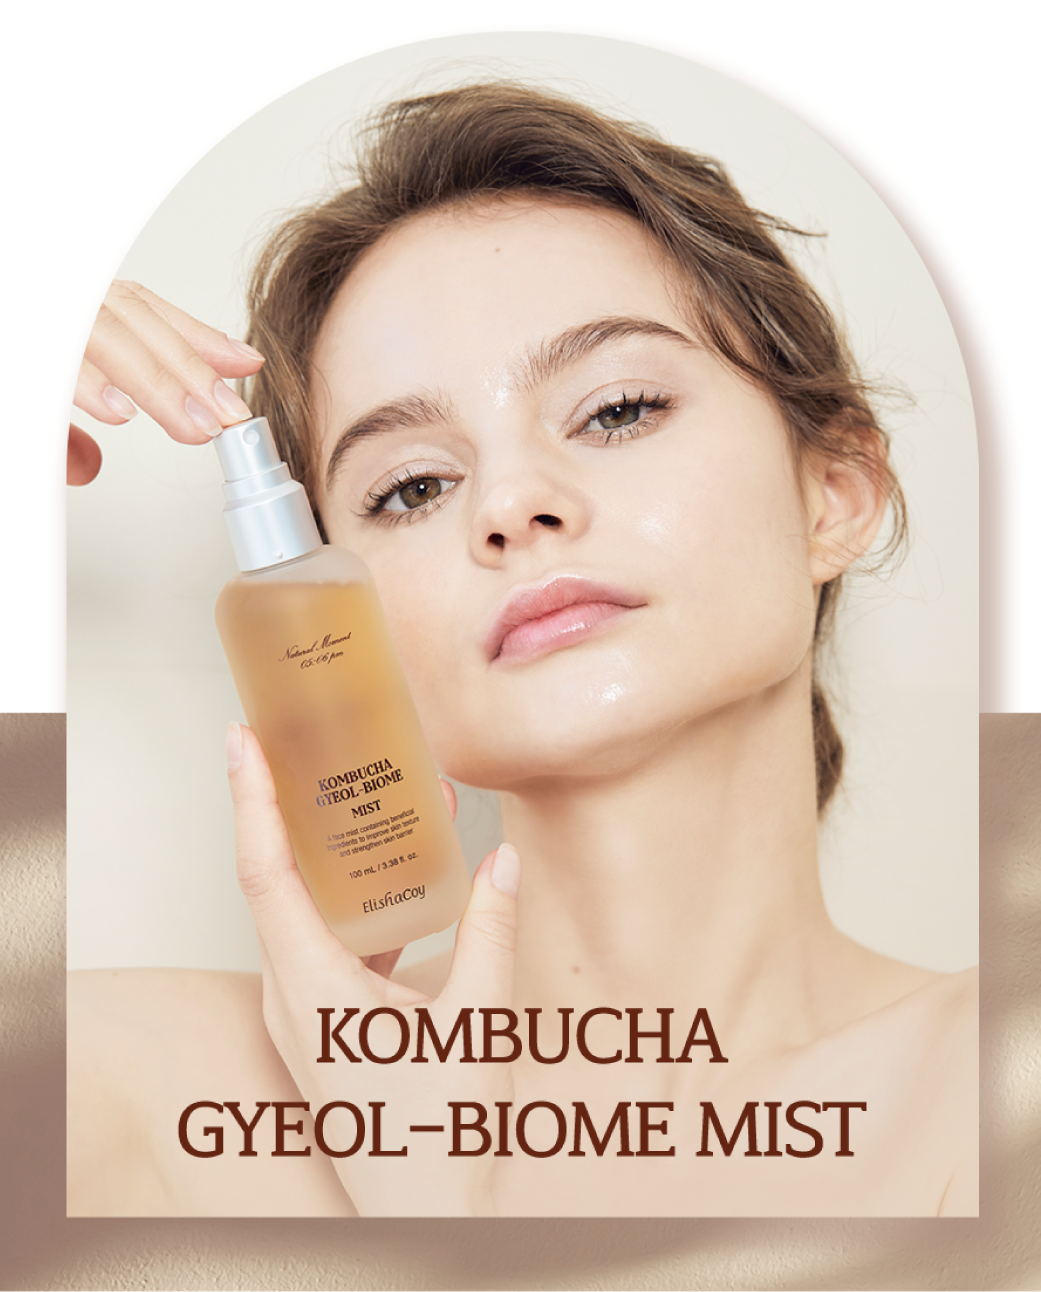 Elishacoy Kombucha Gyeol-Biome Mist